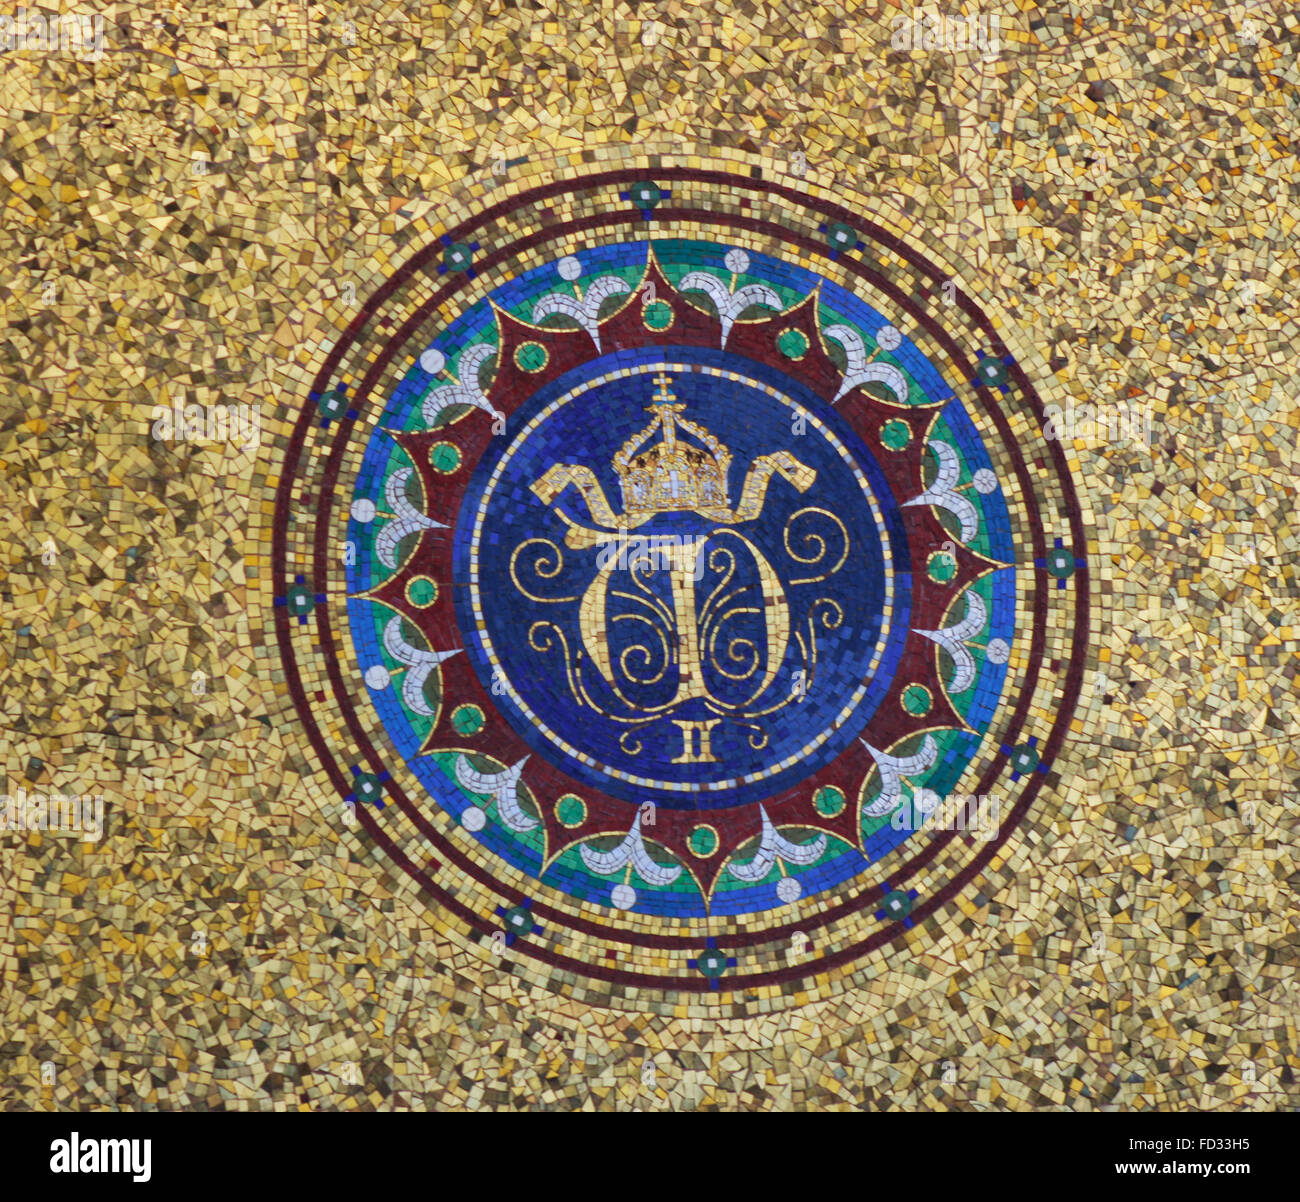 L'emblème royal de Kaiser Wilhemn II sur Fontaine allemande, Istanbul, Turquie Banque D'Images